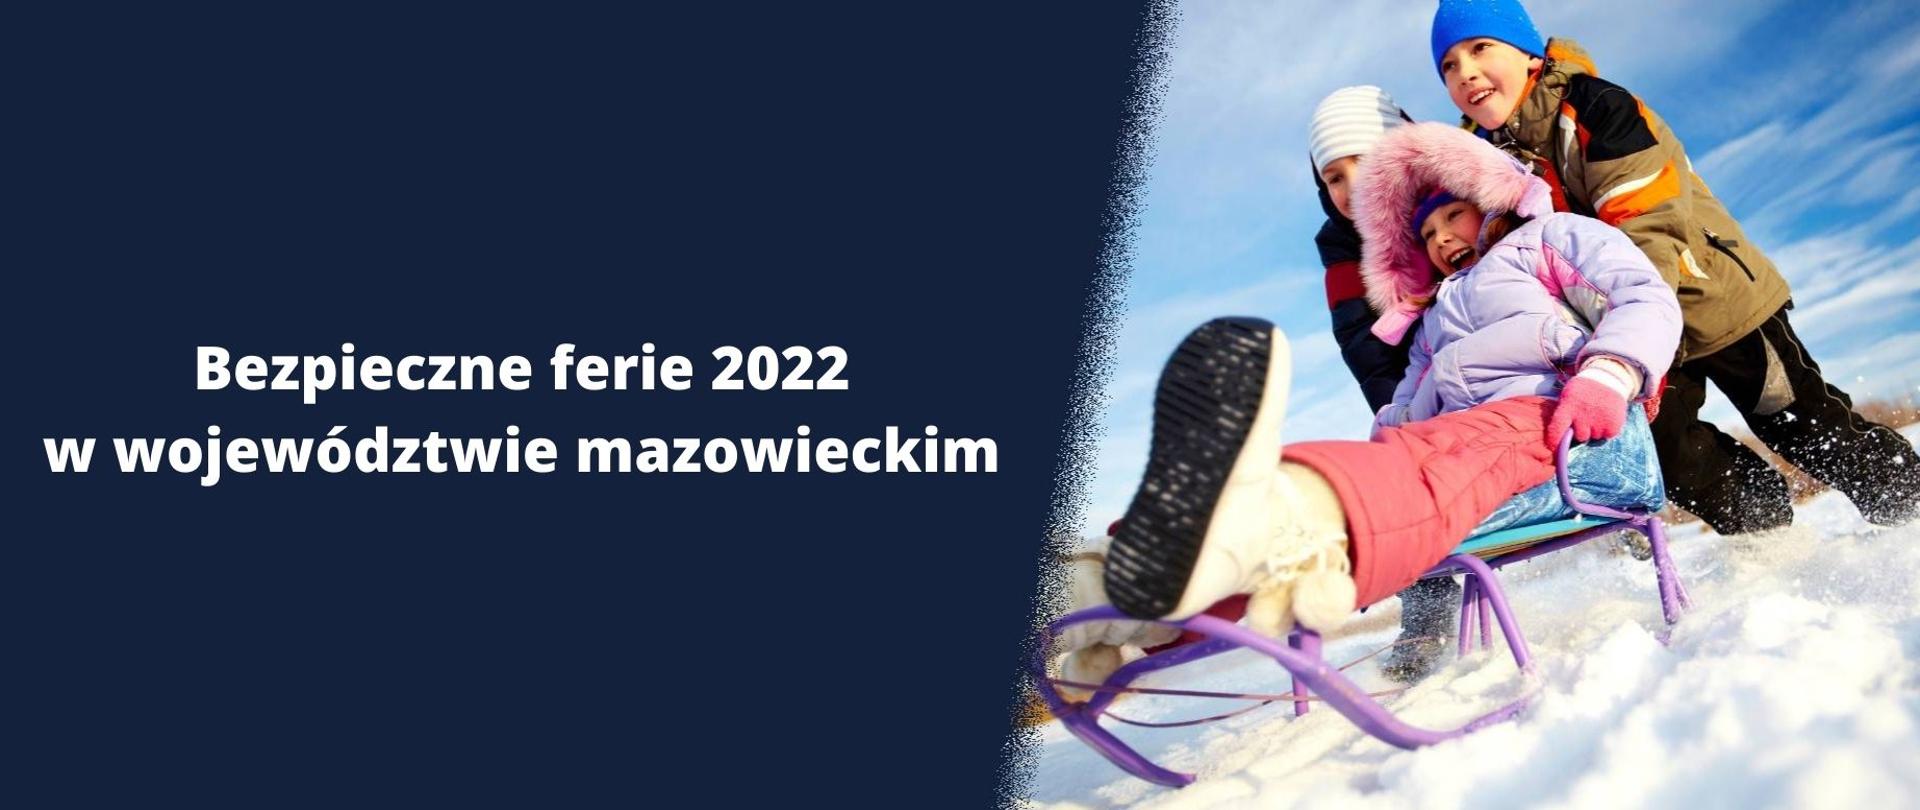 Na grafice, po prawej stronie znajduje się zdjęcie trojga dzieci, po lewej granatowe tło z białym napisem "Bezpieczne ferie 2022 w województwie mazowieckim."